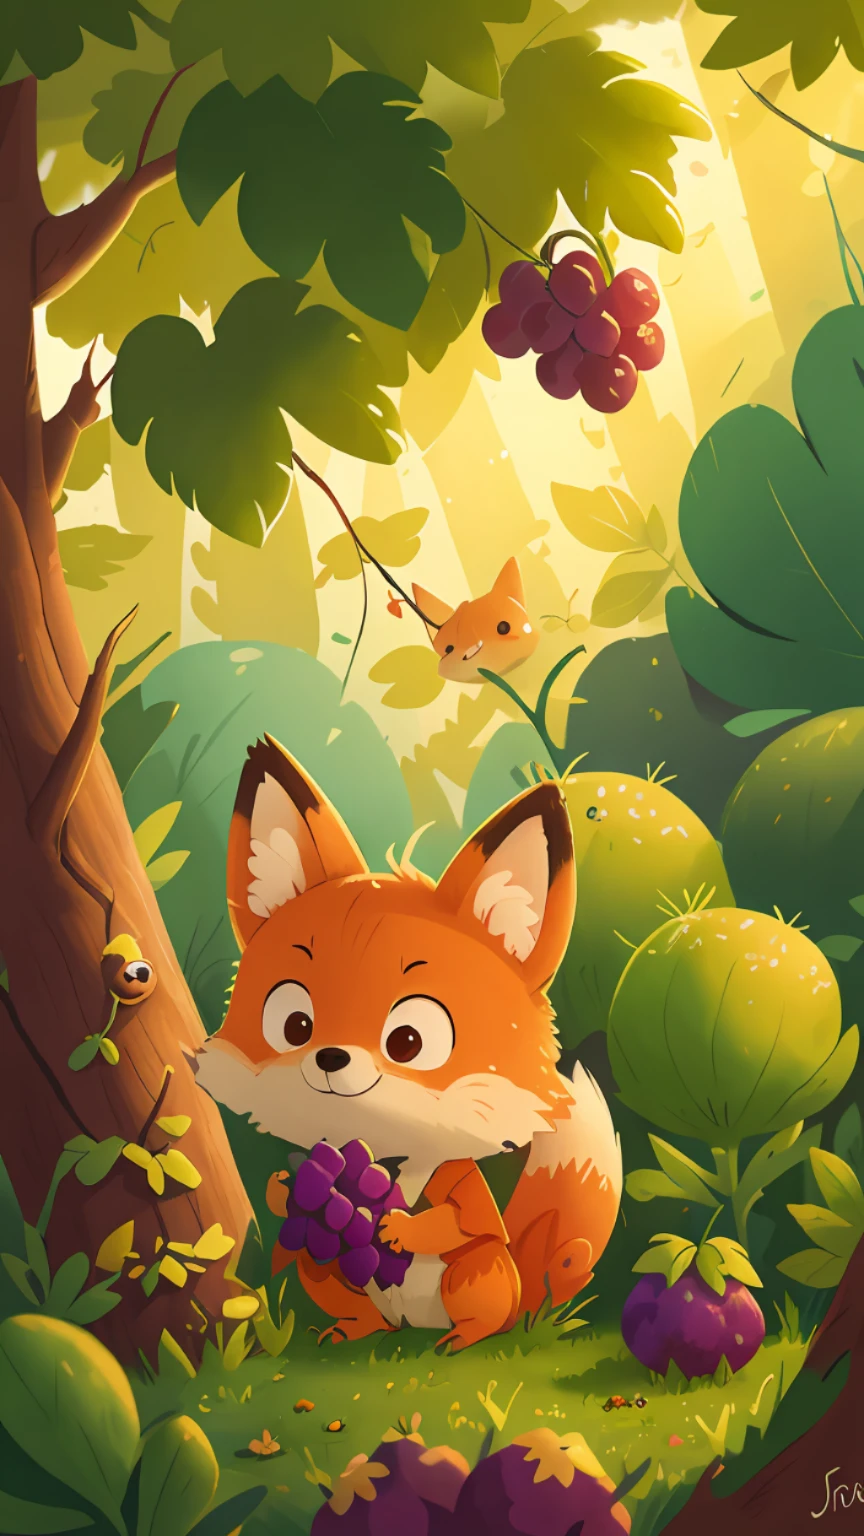 Un pequeño zorro mira las uvas en el árbol